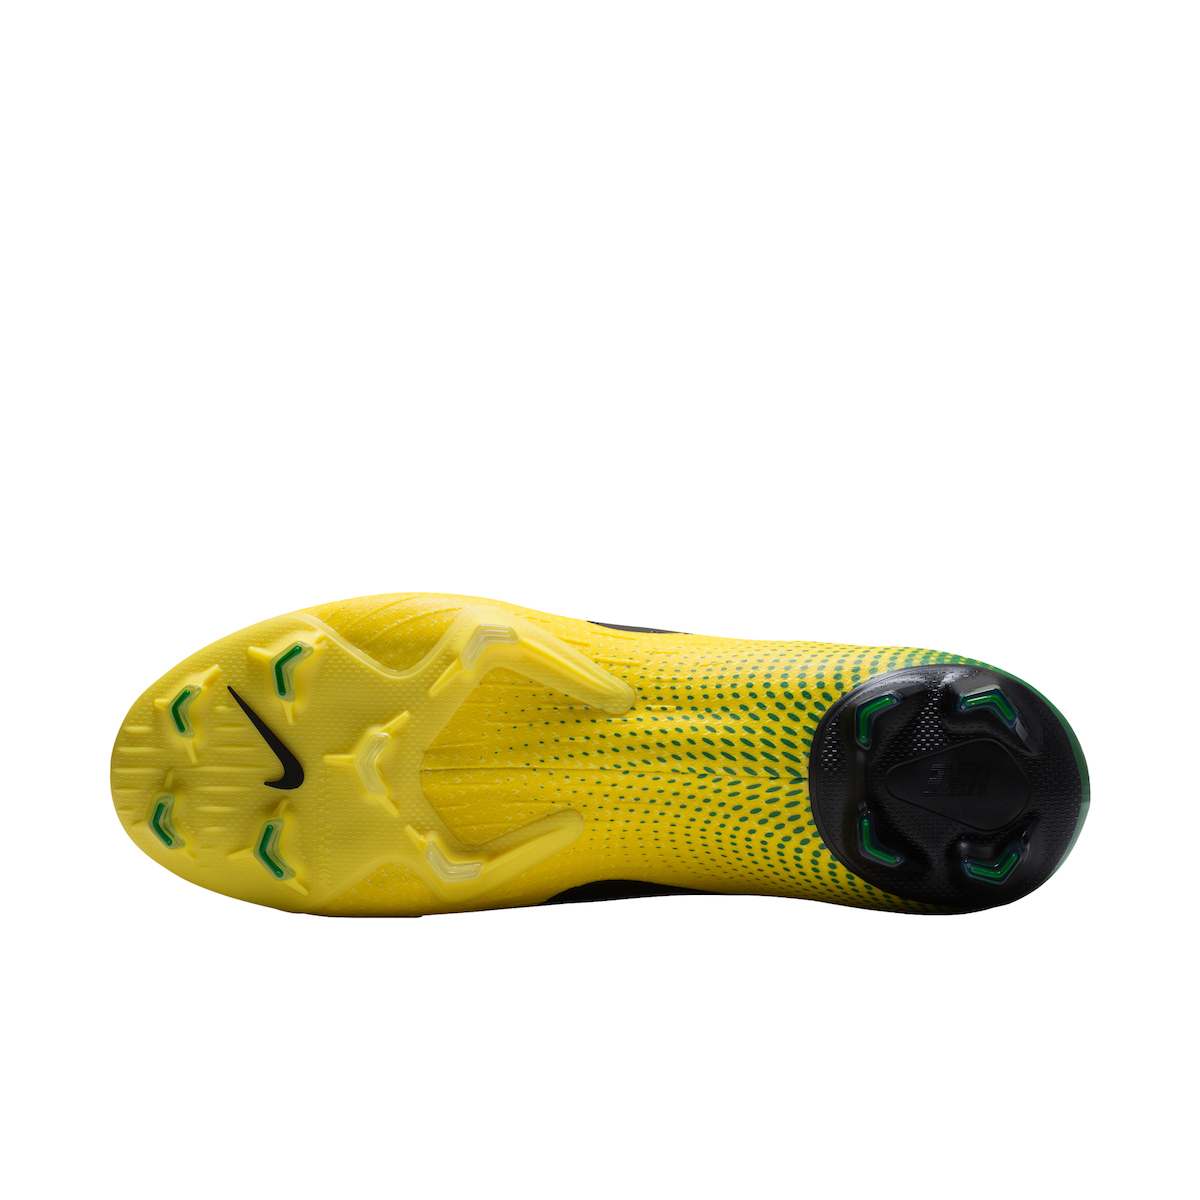 ブラジルの“怪物”ロナウド着用スパイクのデザインを最新“ナイキ エア 